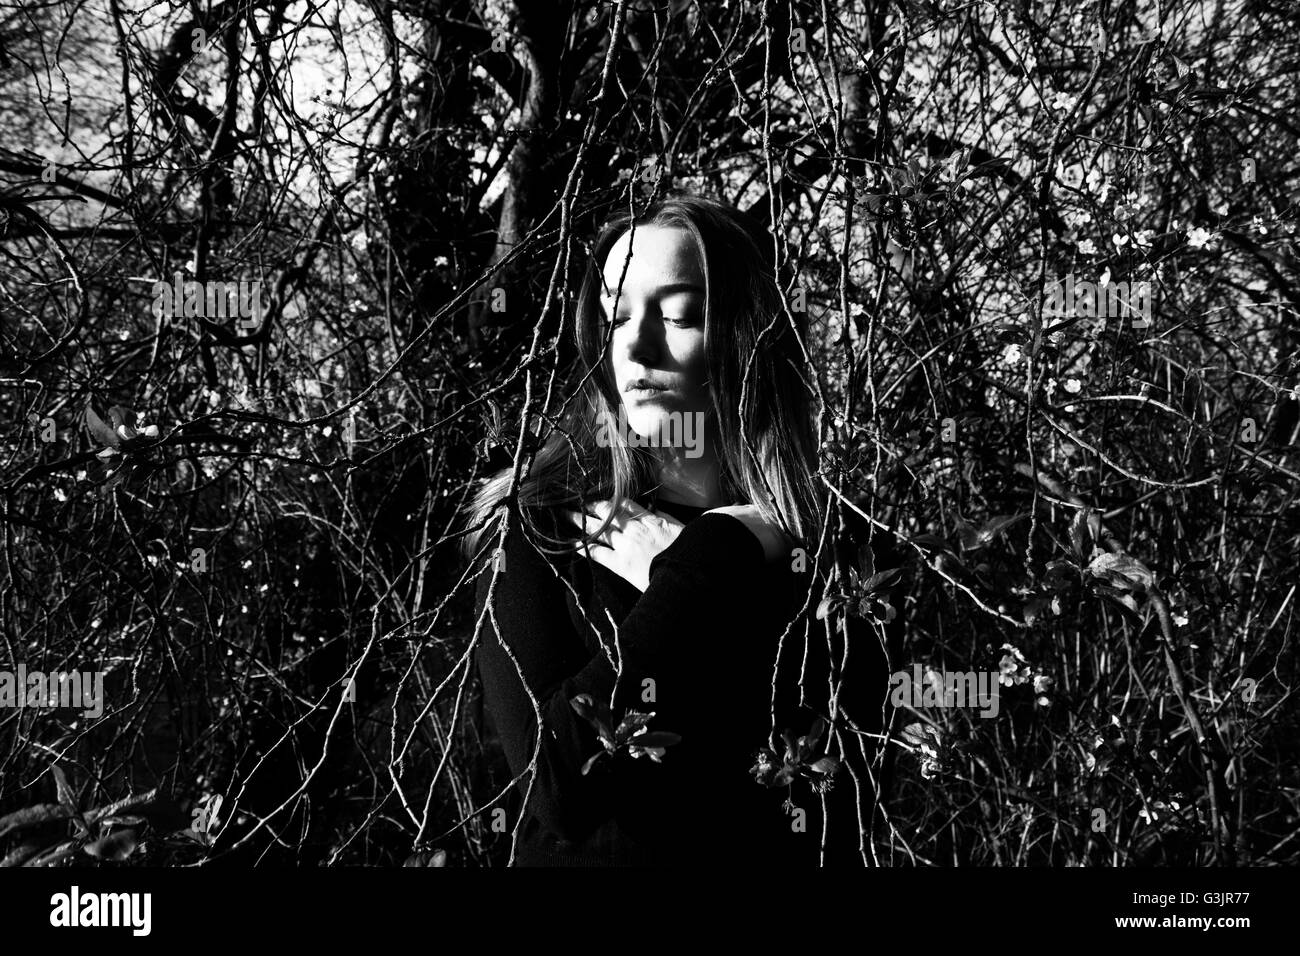 Perso, depresso ragazza nel bosco. Immagine in bianco e nero. Foto Stock